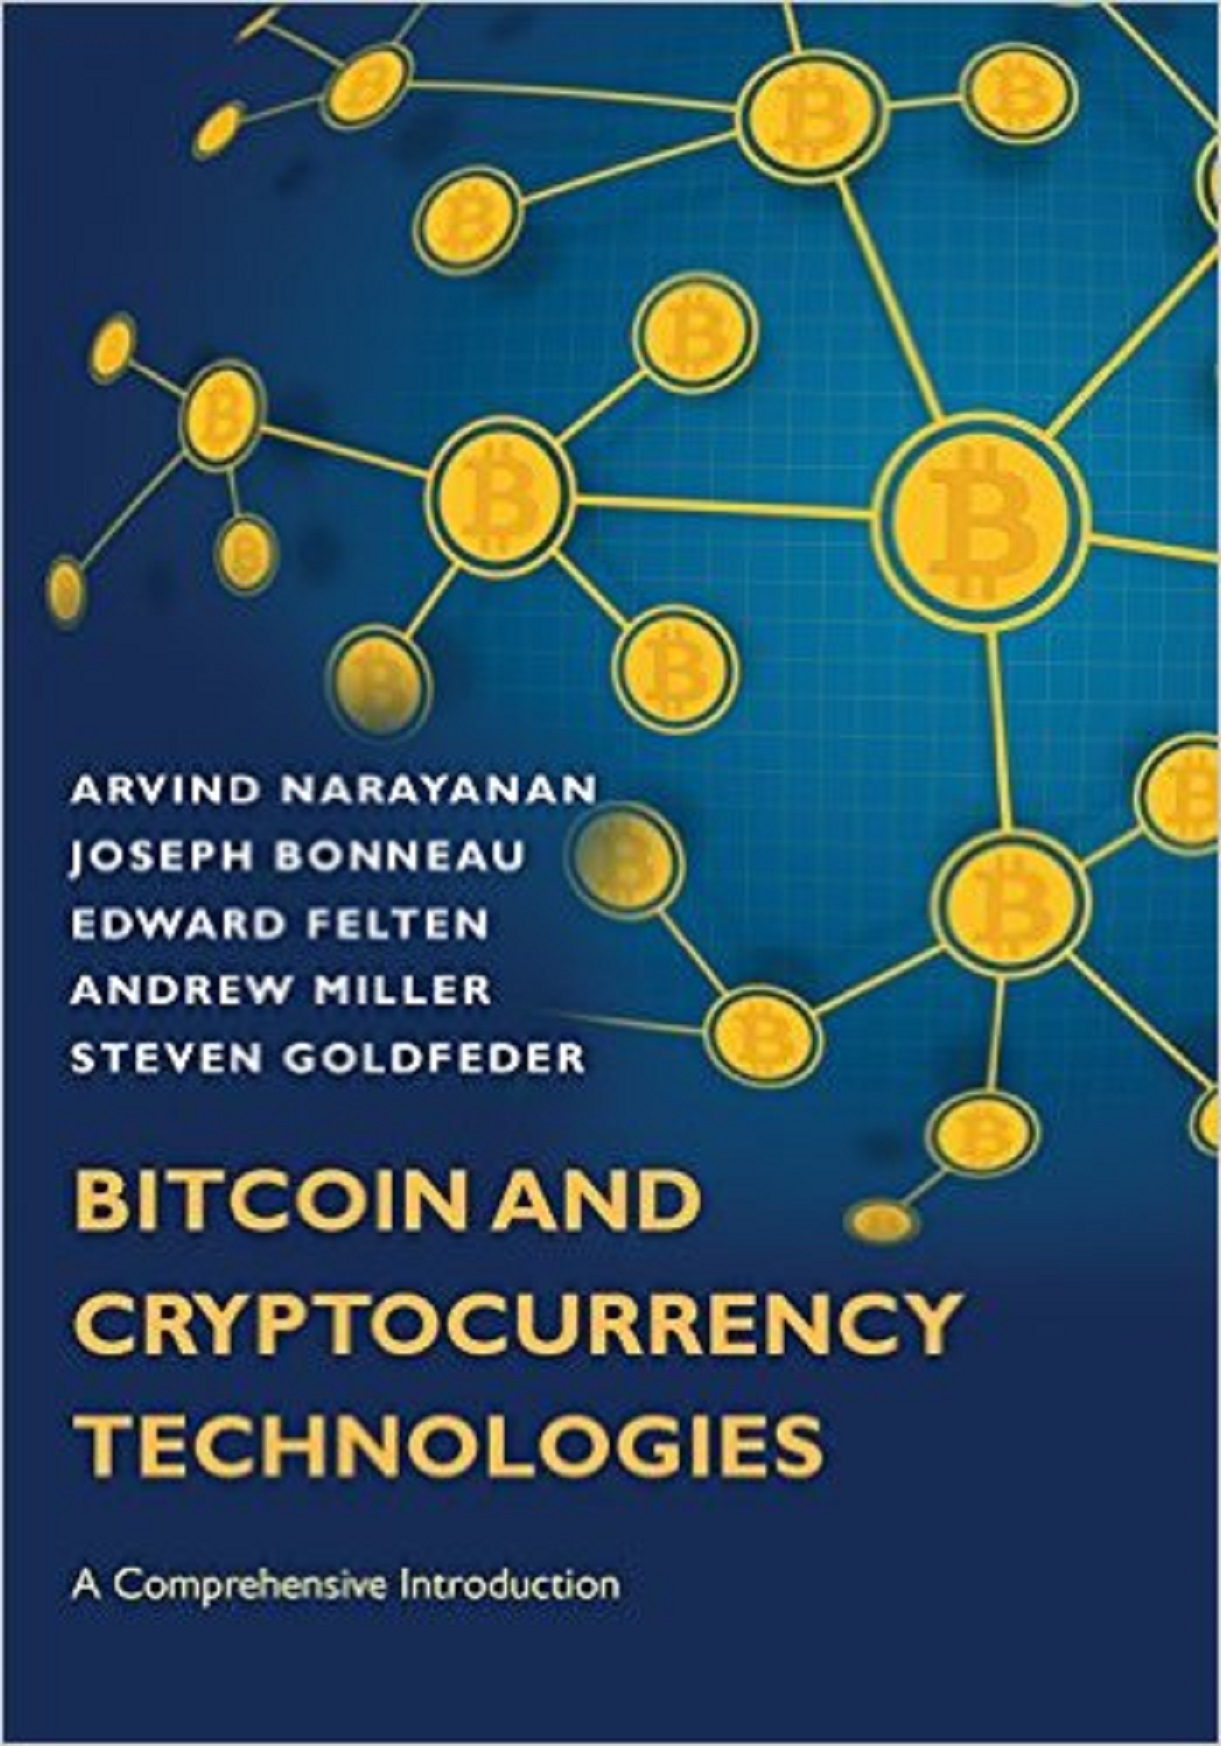 bitcoin_book_cover2.jpg